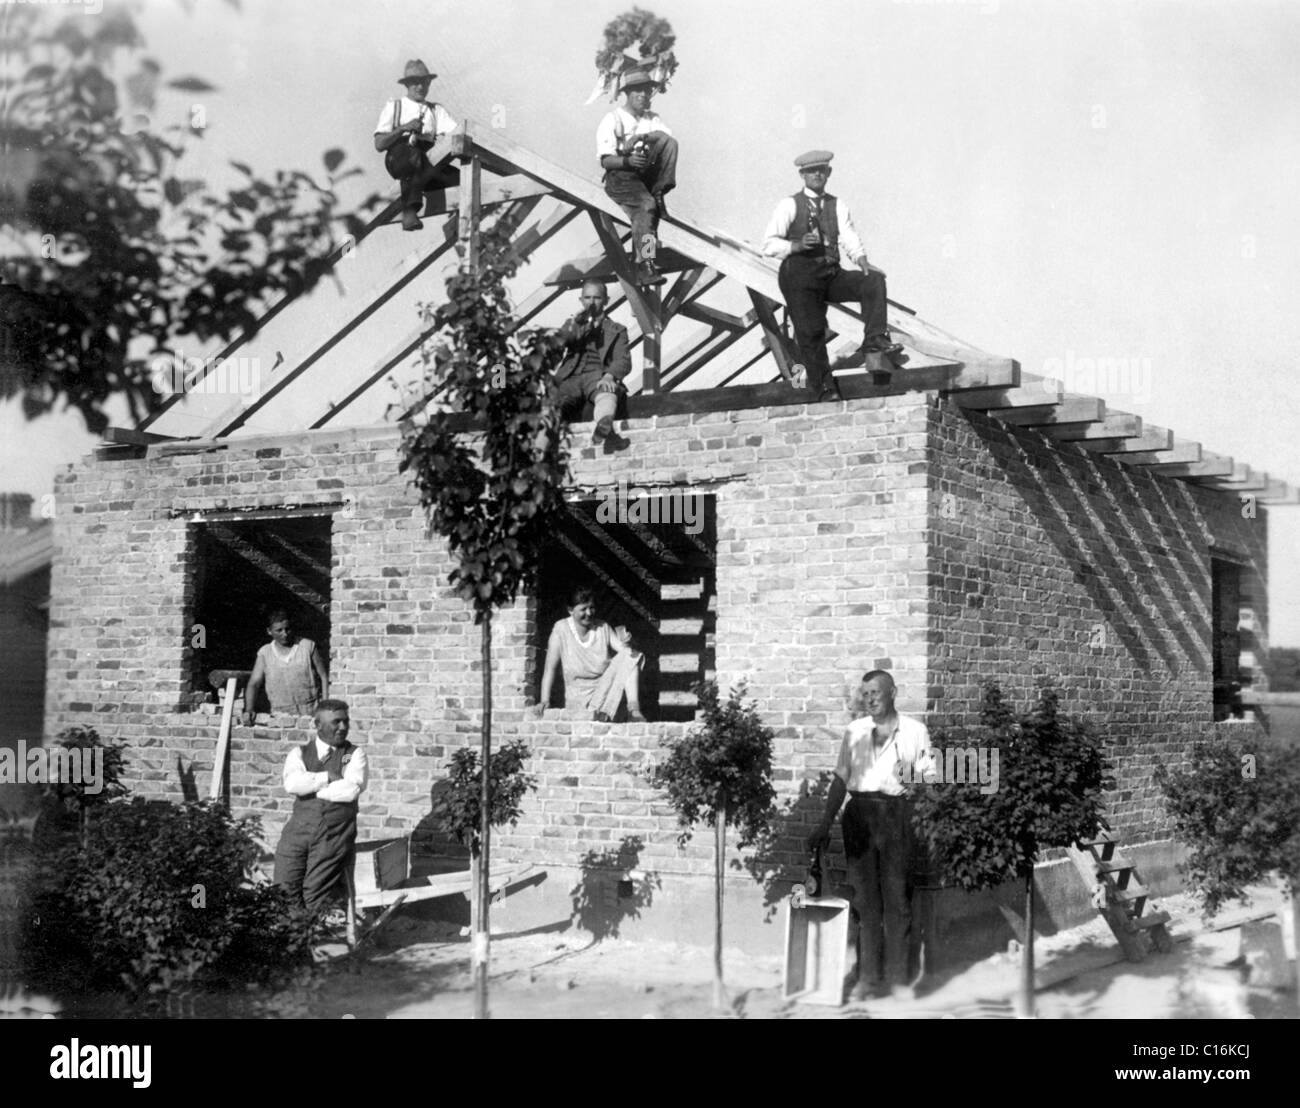 Fotografía Histórica, tejados, ceremonia en 1930 Foto de stock